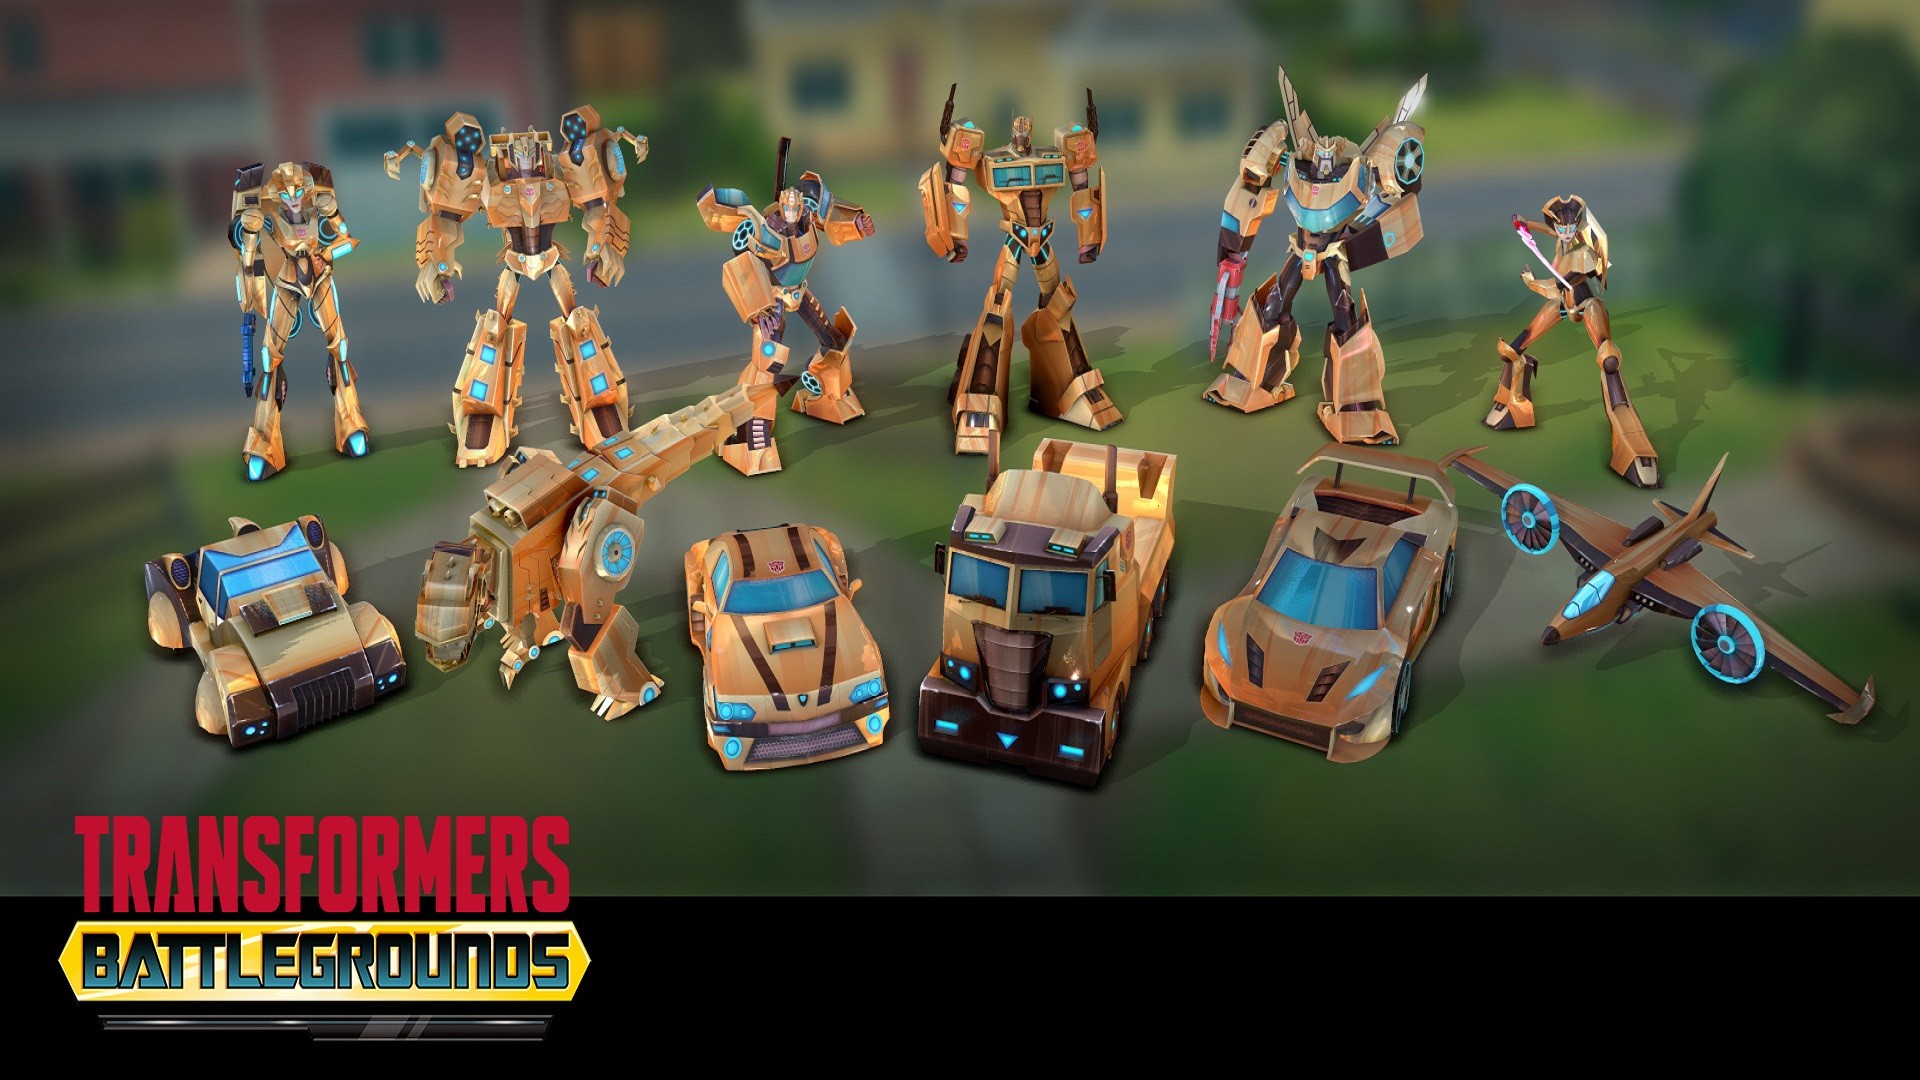 TRANSFORMERS: BATTLEGROUNDS - Gold Autobot Skin Pack Featured Screenshot #1